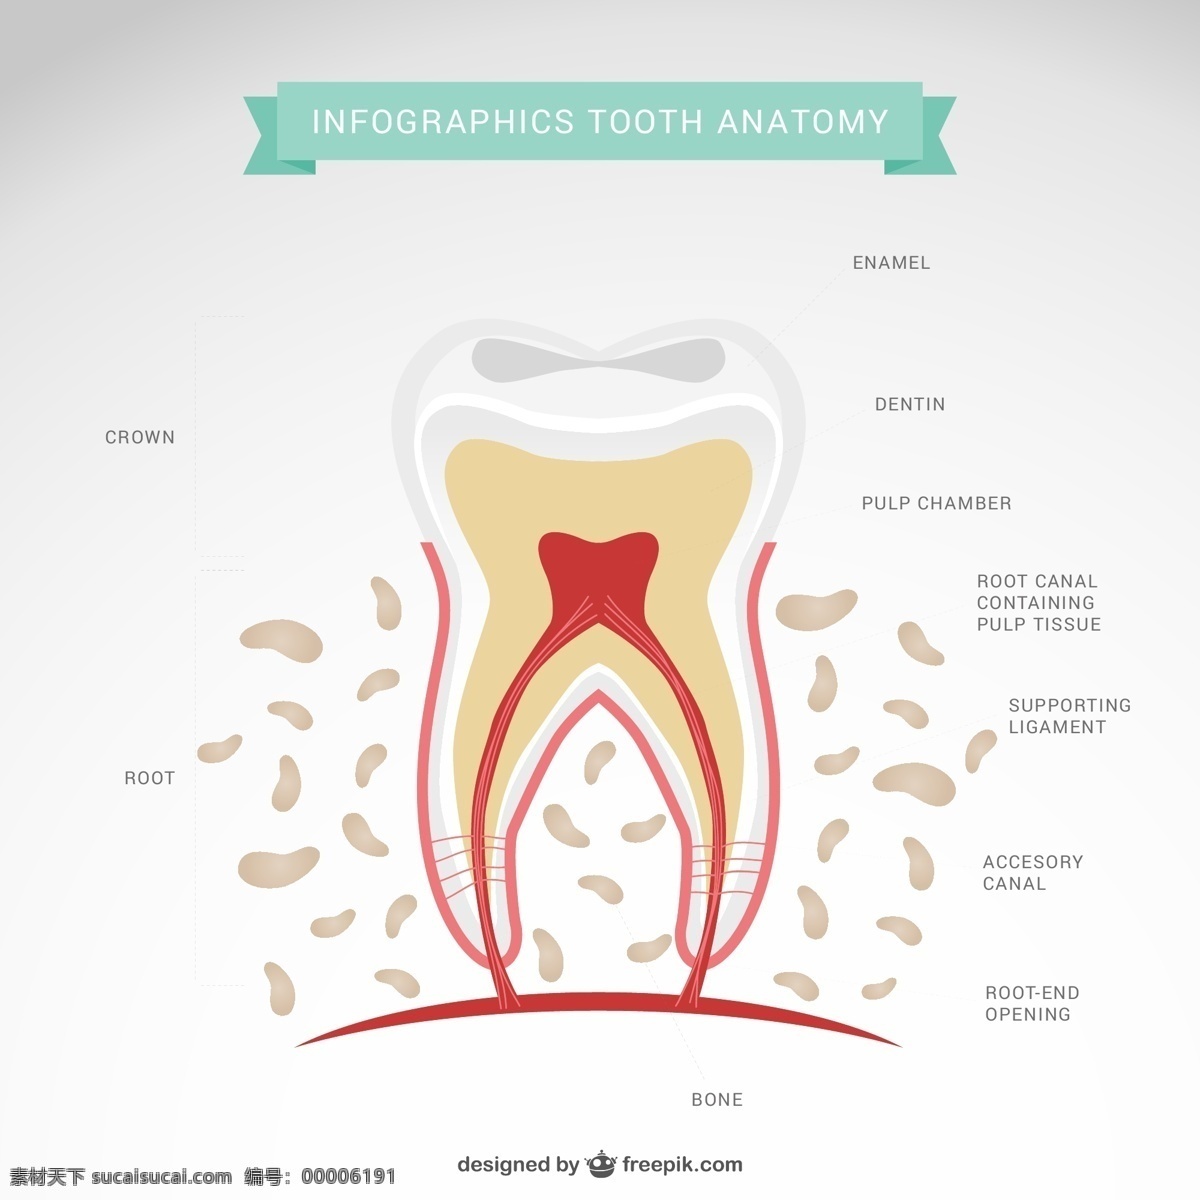 卡通 牙齿 形态 解剖 图 ai格式 矢量图 信息图 牙釉质 牙本质 牙骨质 牙髓 解剖结构图 牙齿剖面